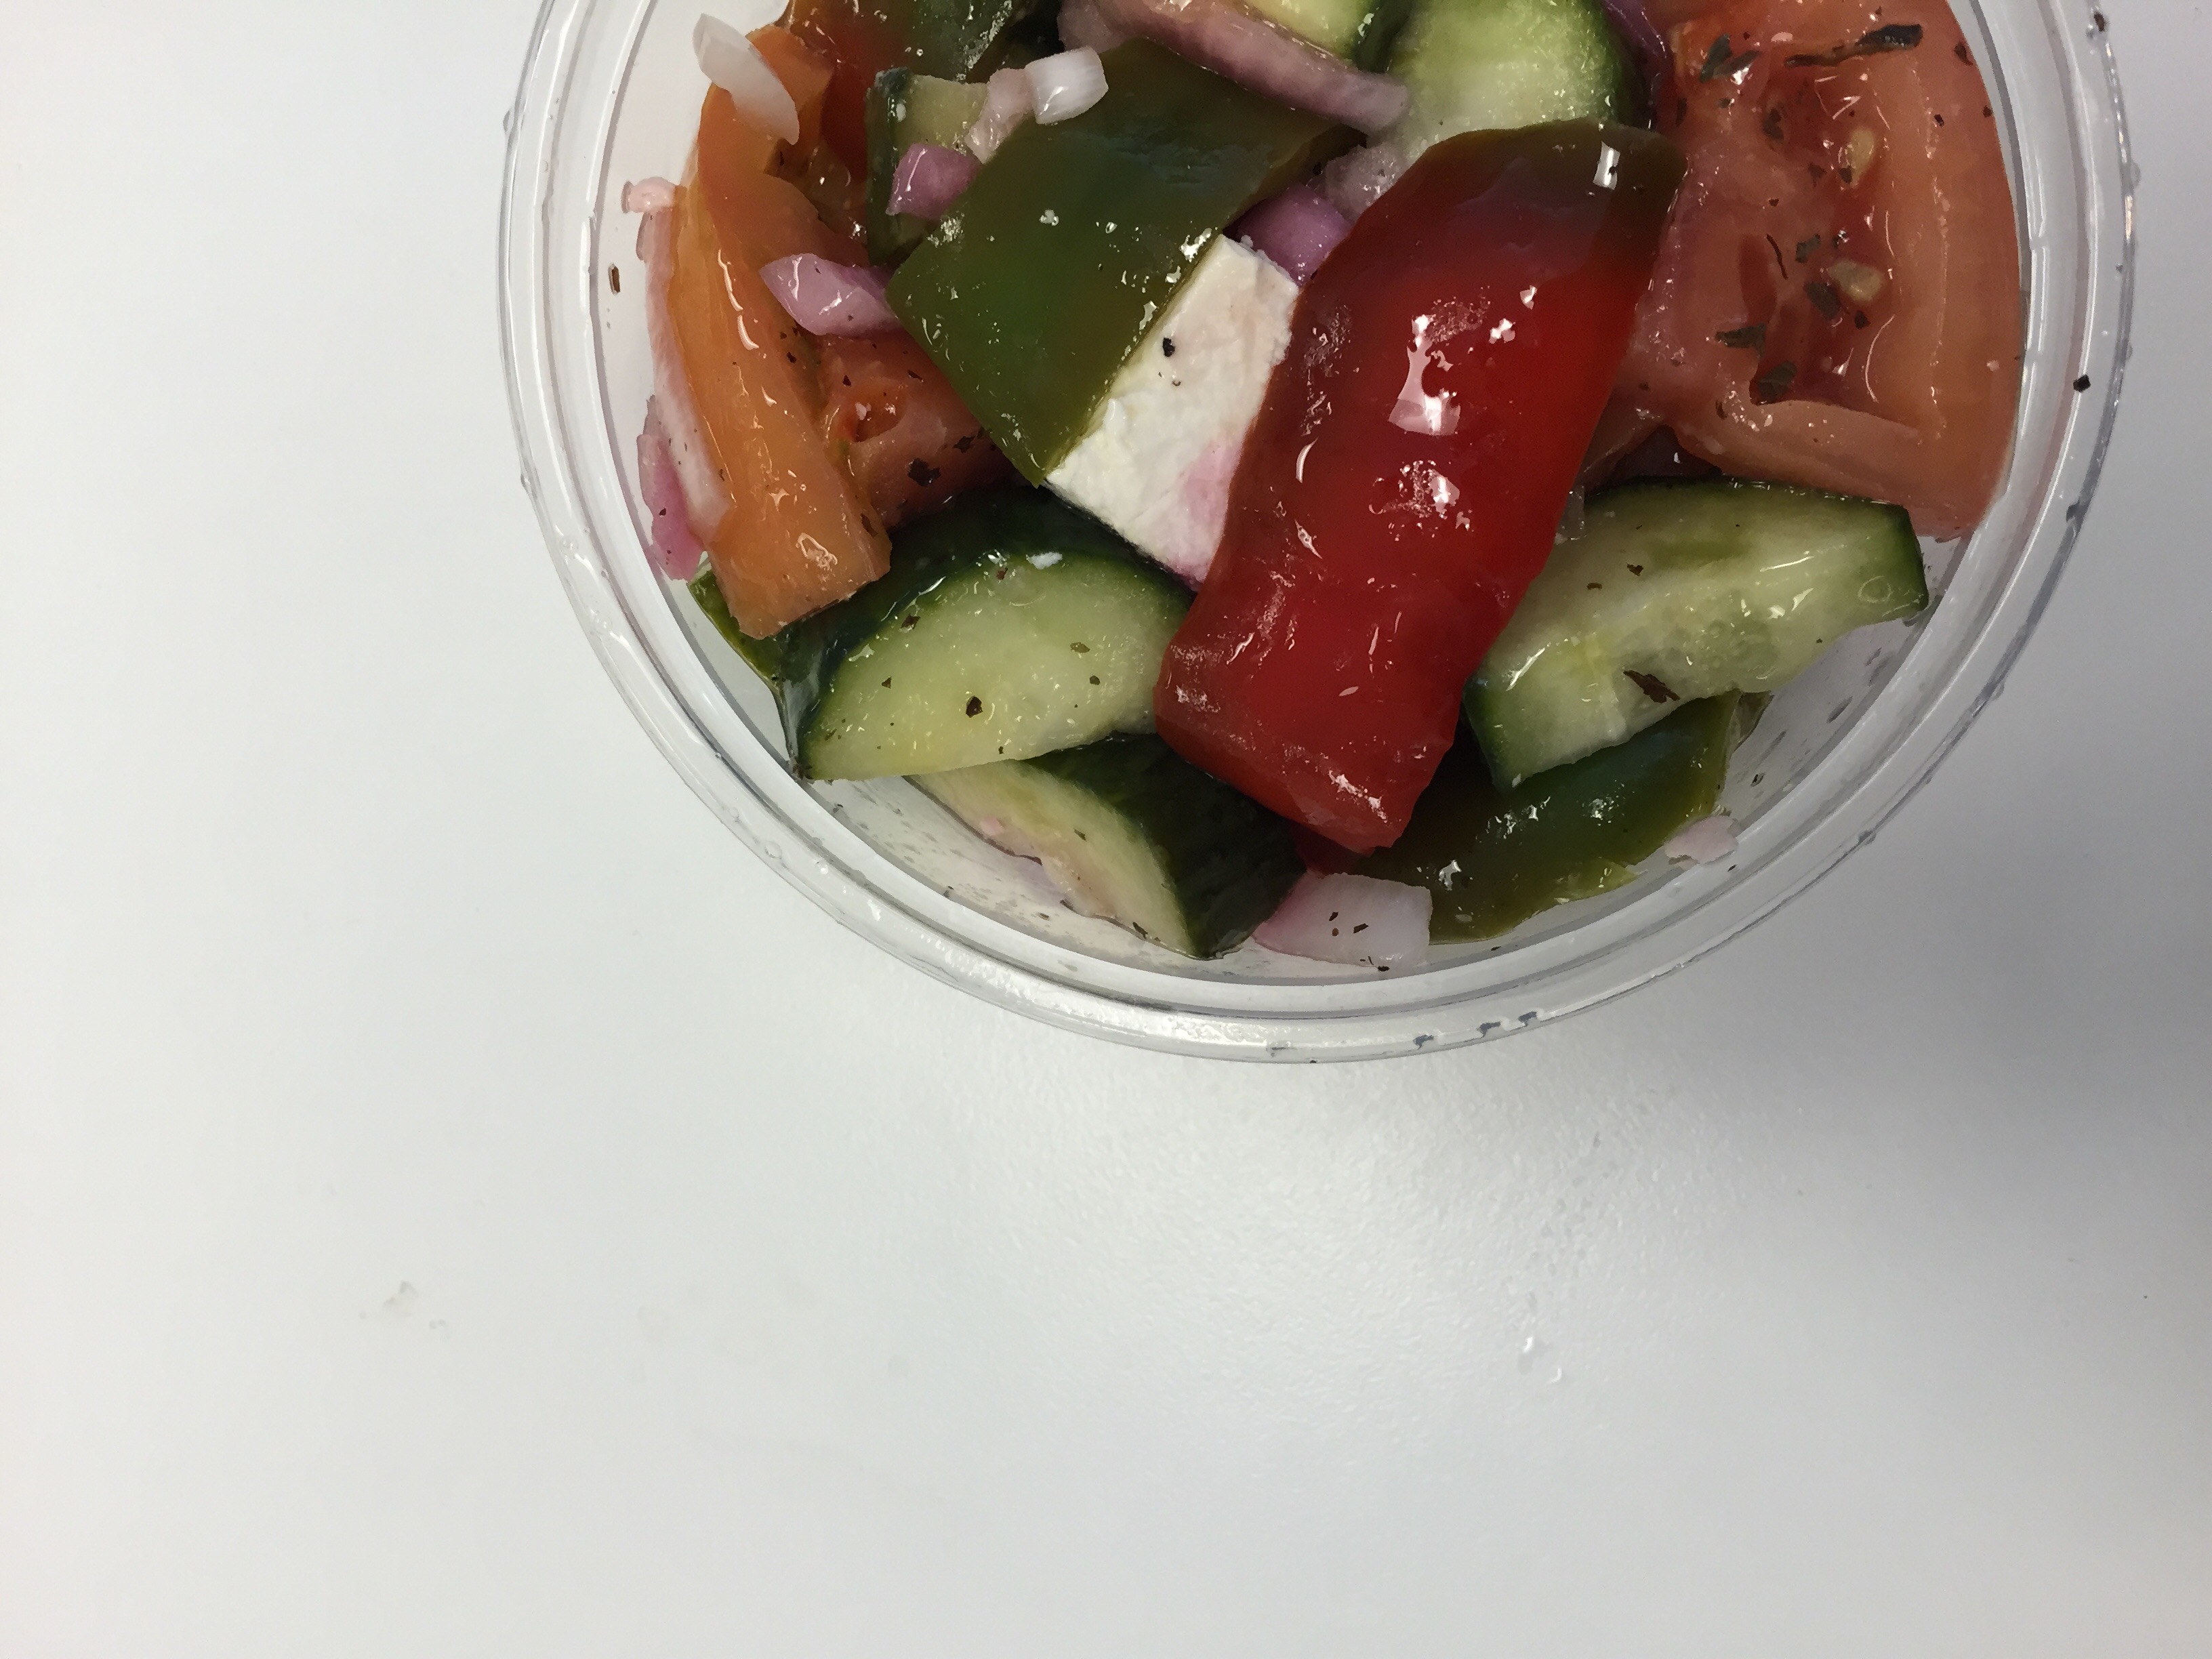 [A Greek salad consumed by Sonia Chopra]